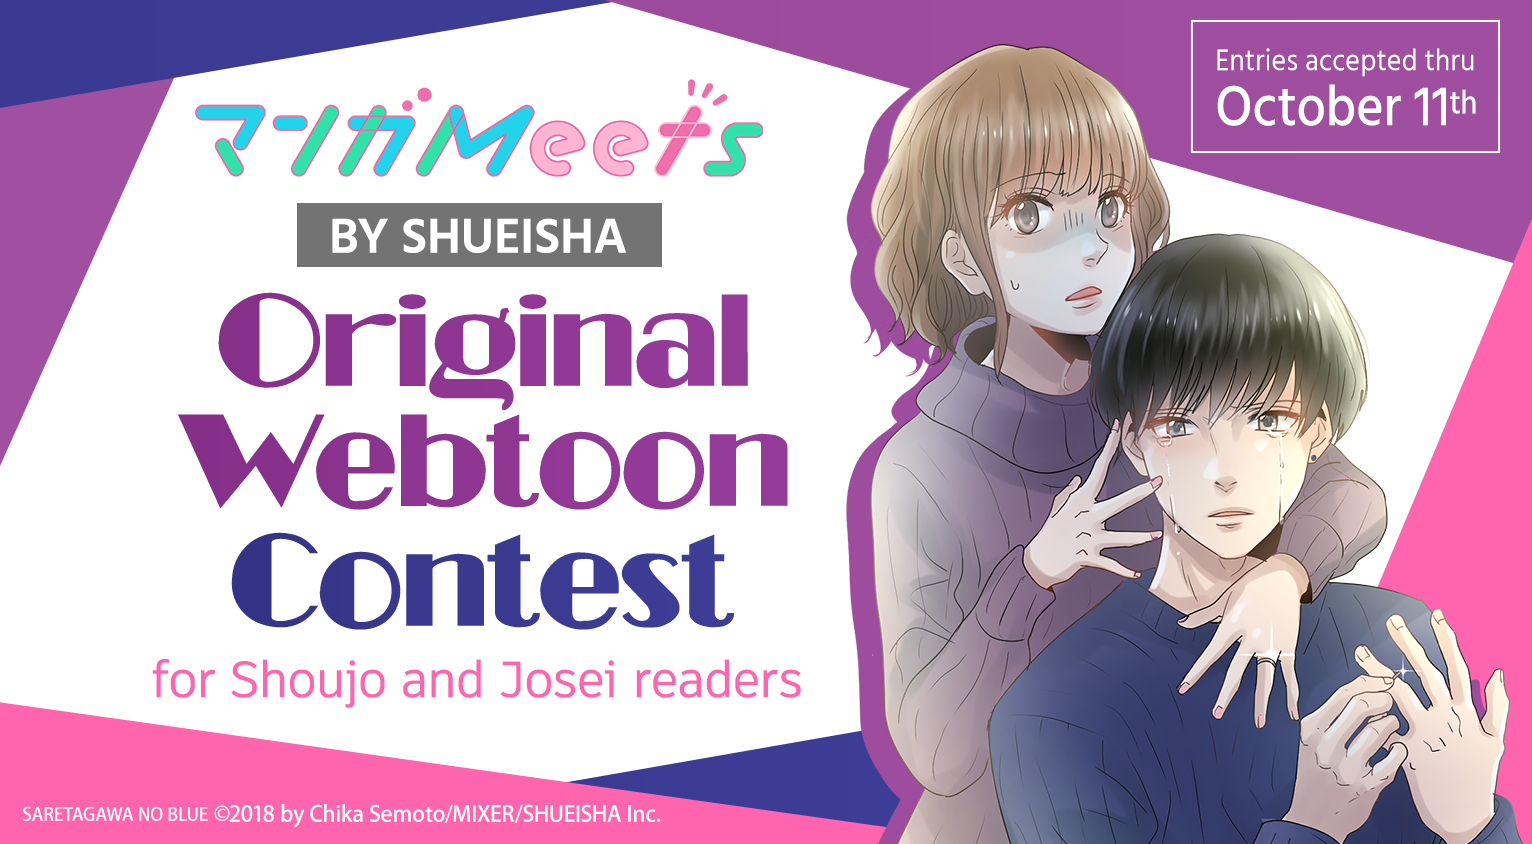 Comikey Partners with Shueisha for MangaMeet's original webtoon contest